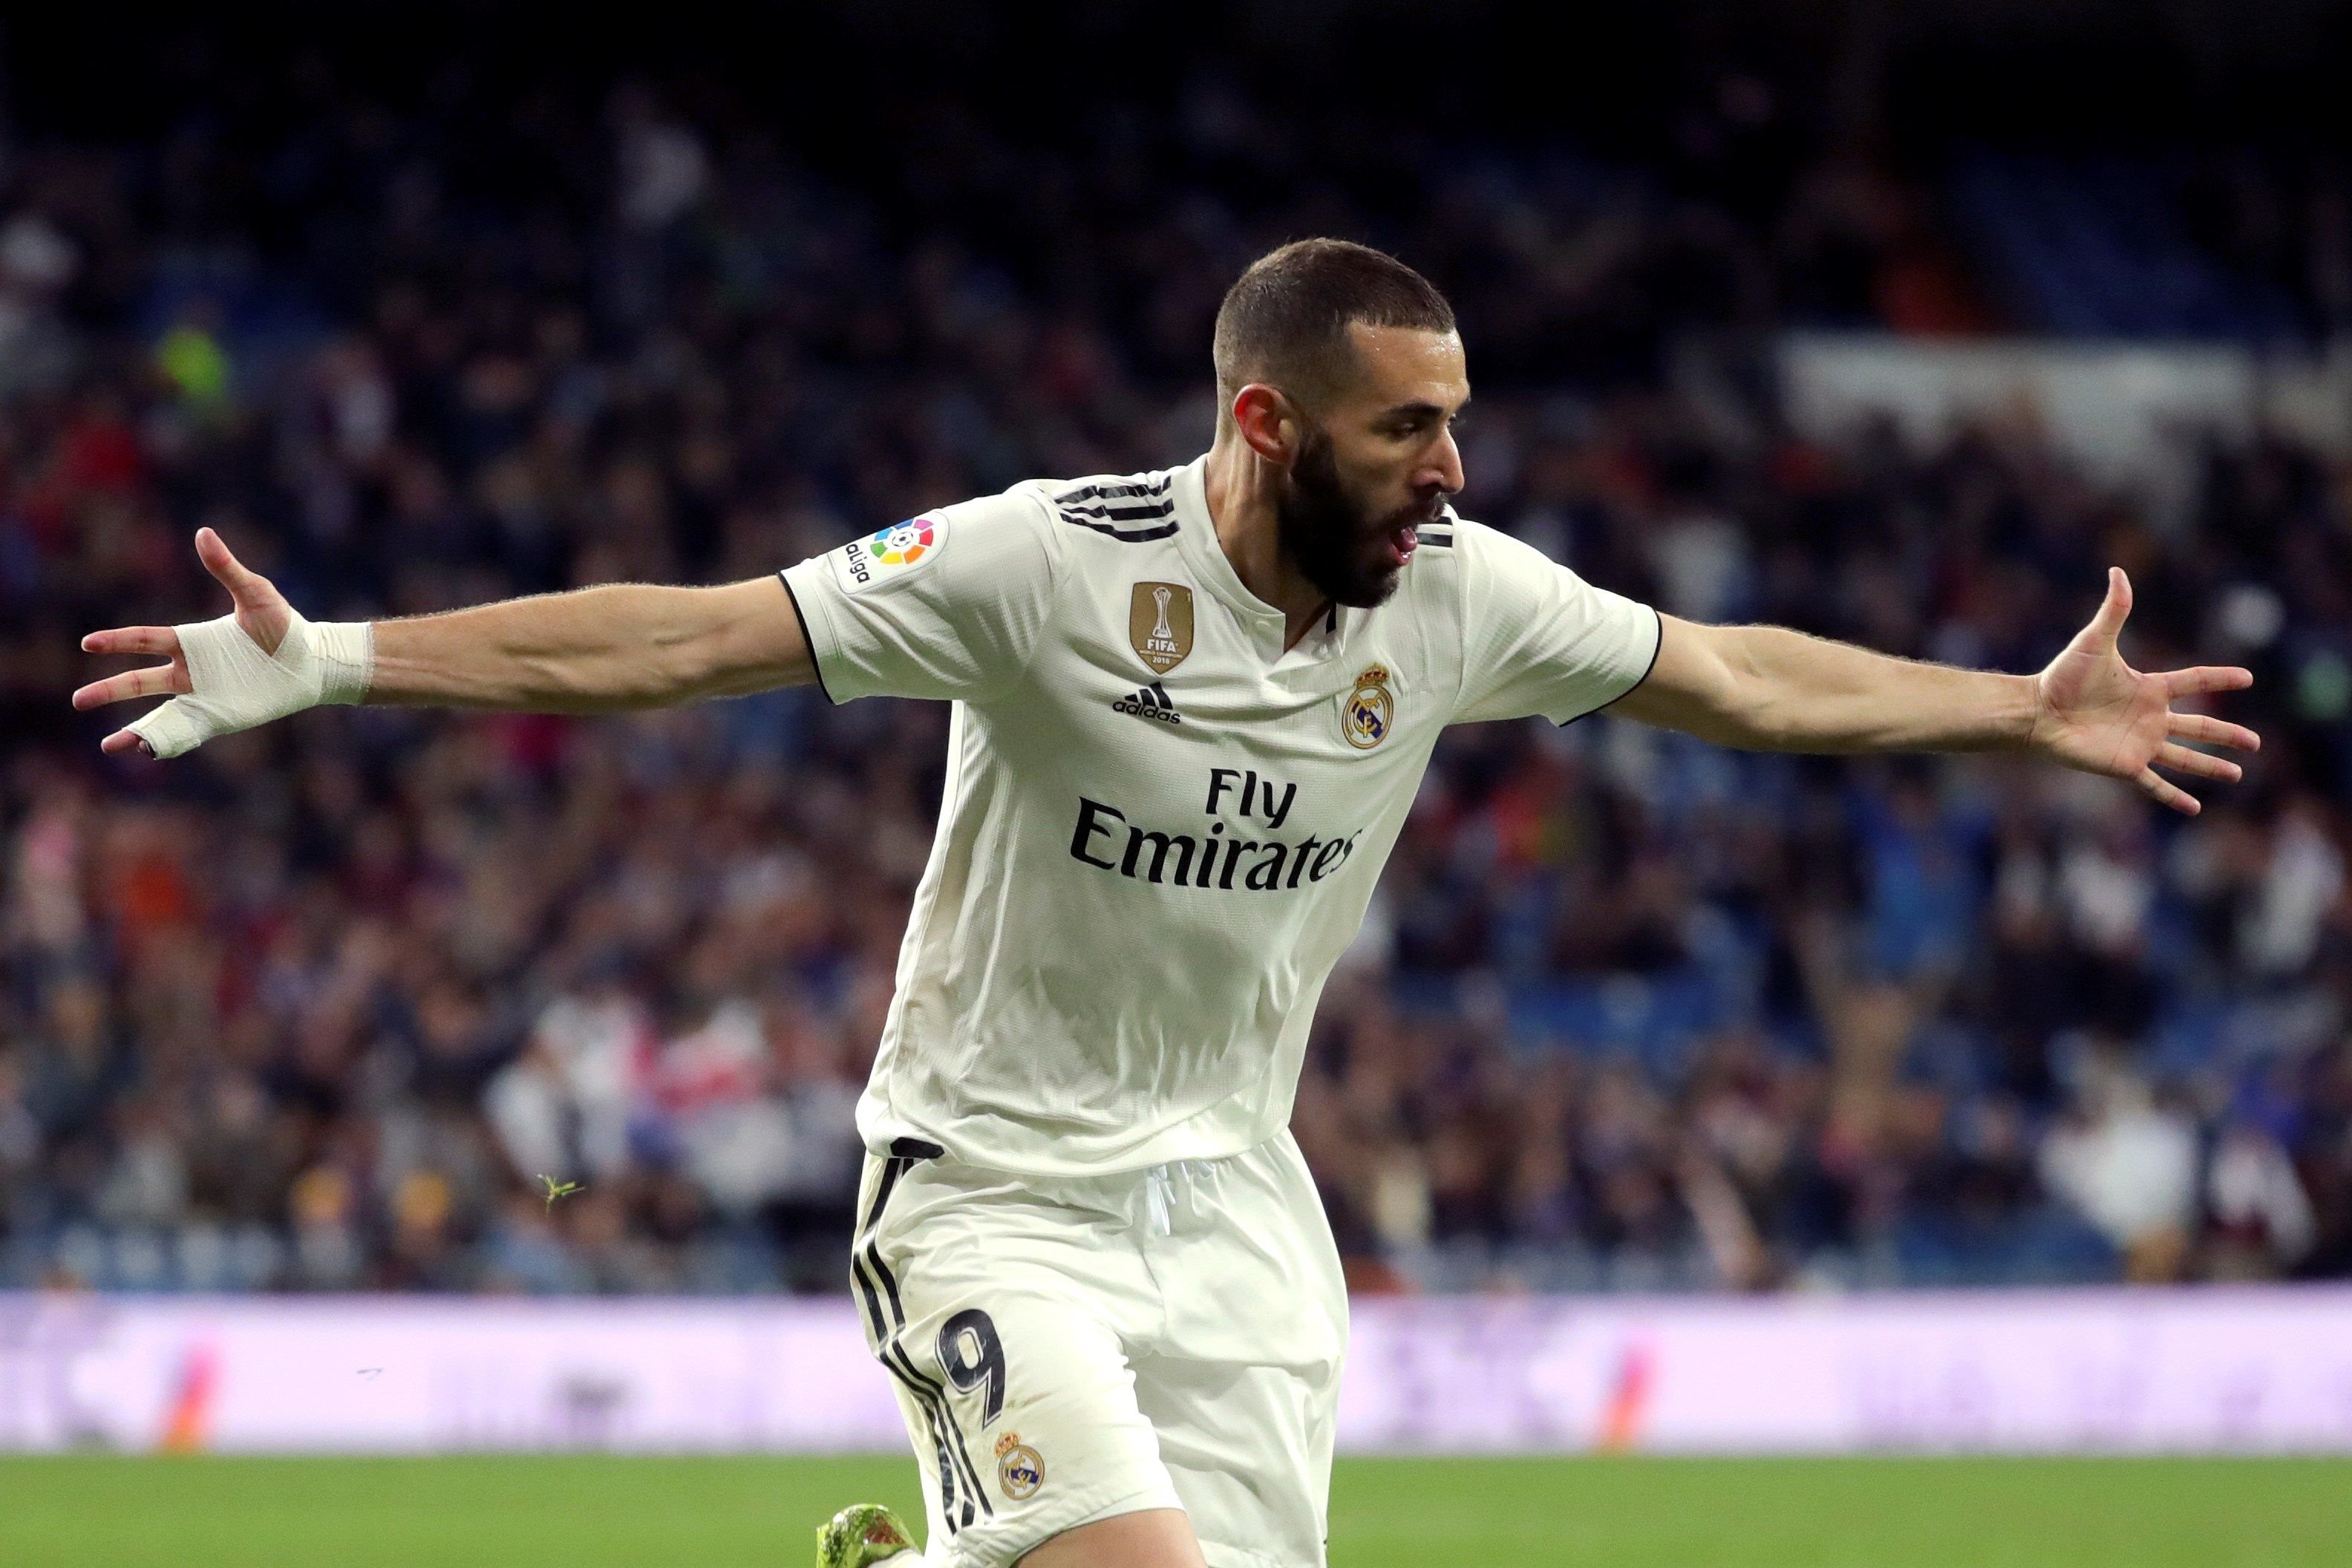 El Madrid firmarà un contracte rècord amb Adidas